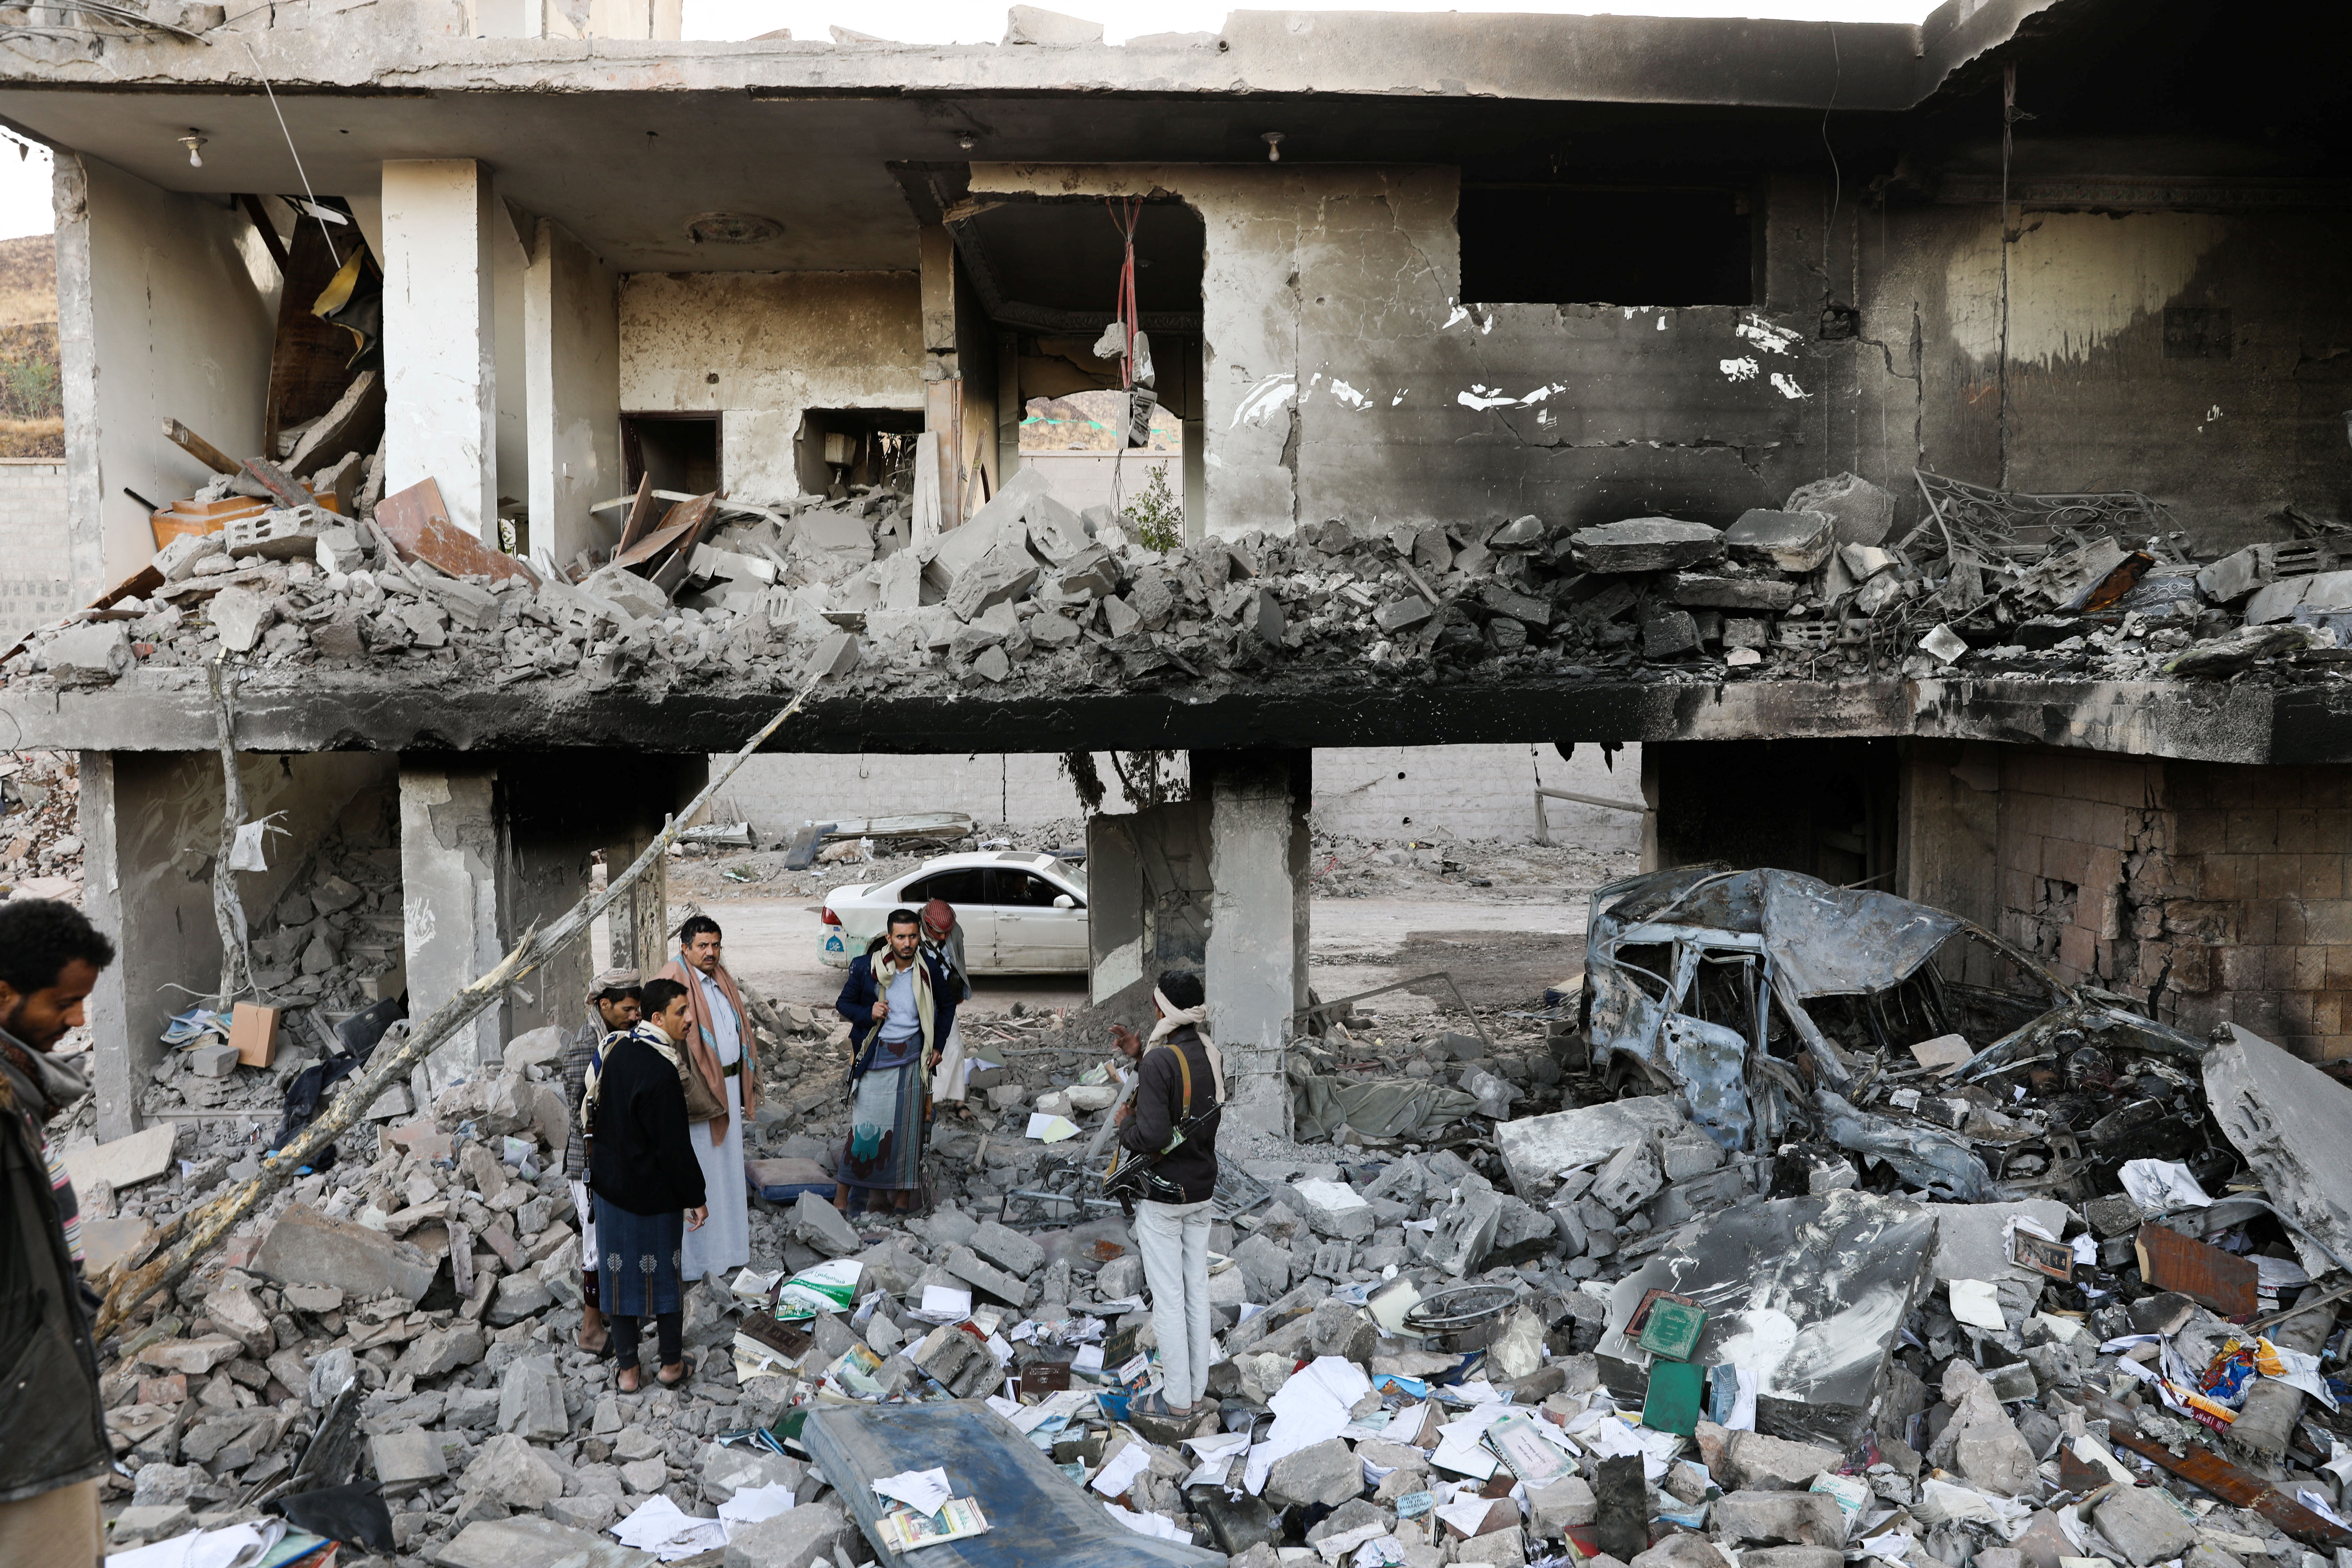 Milicianos houthis tratando de rescatar entre los escombros a posibles sobrevivientes del último bombardeo de la aviación saudita sobre Sanaa, la capital yemení. REUTERS/Khaled Abdullah